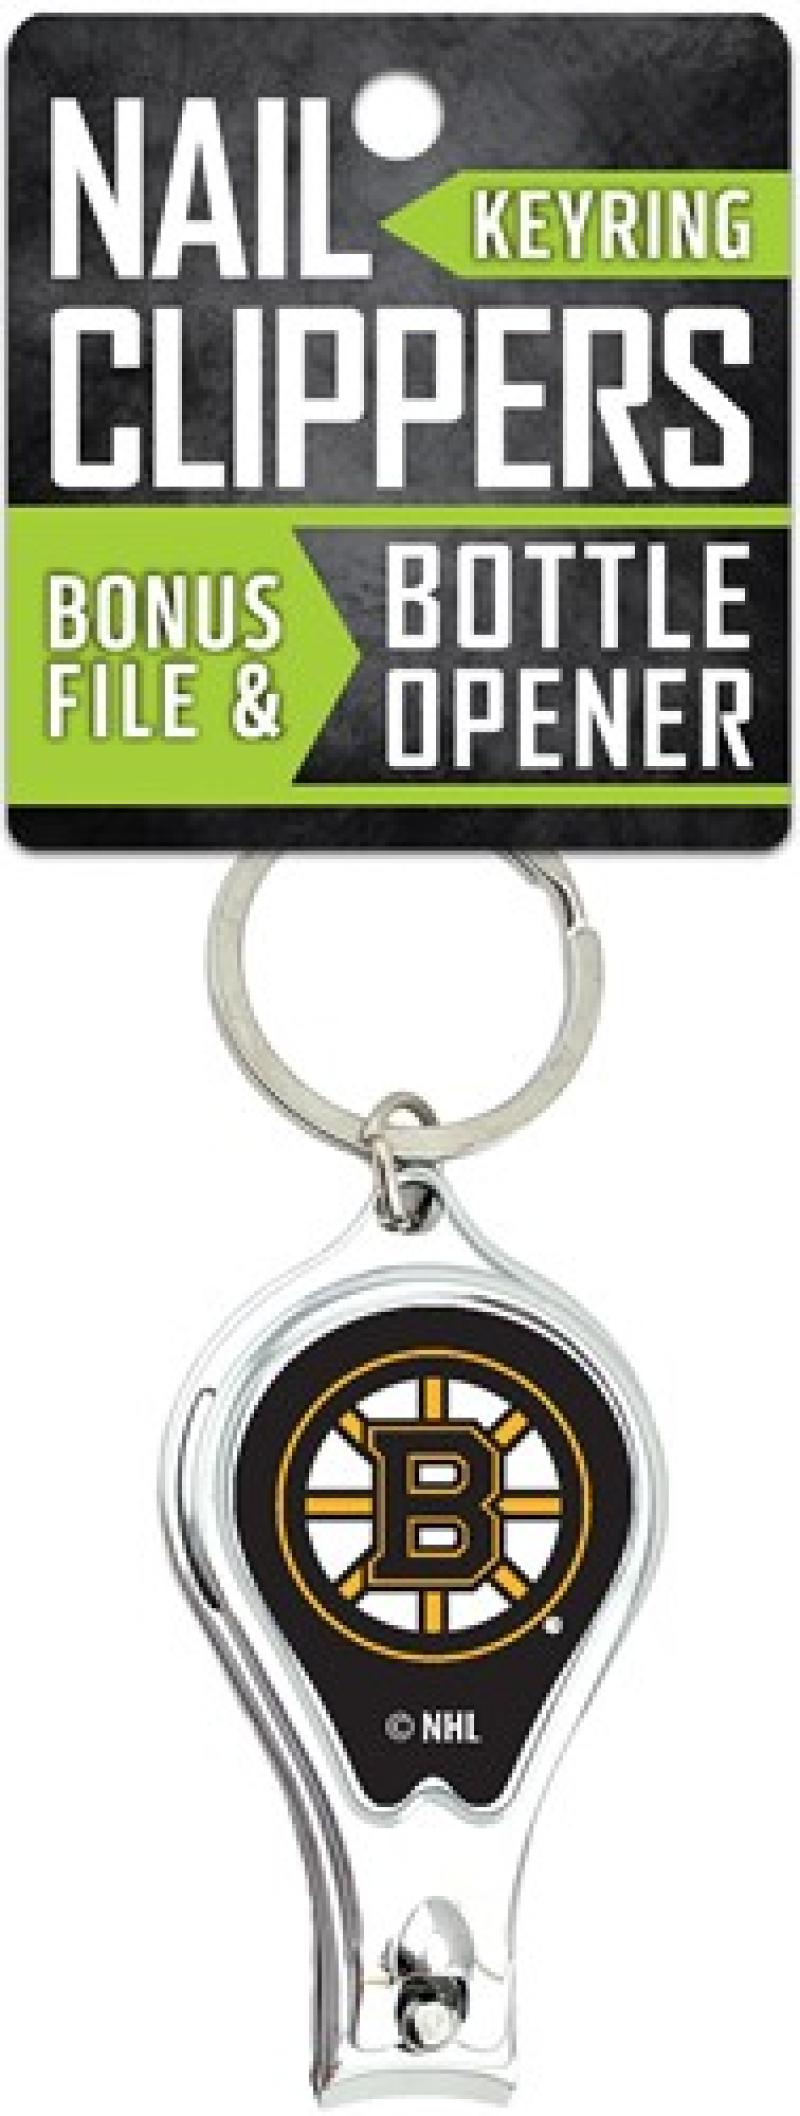 Boston Bruins Nail Clipper Keyring w/Bonus File & Bottle Opener Image 1